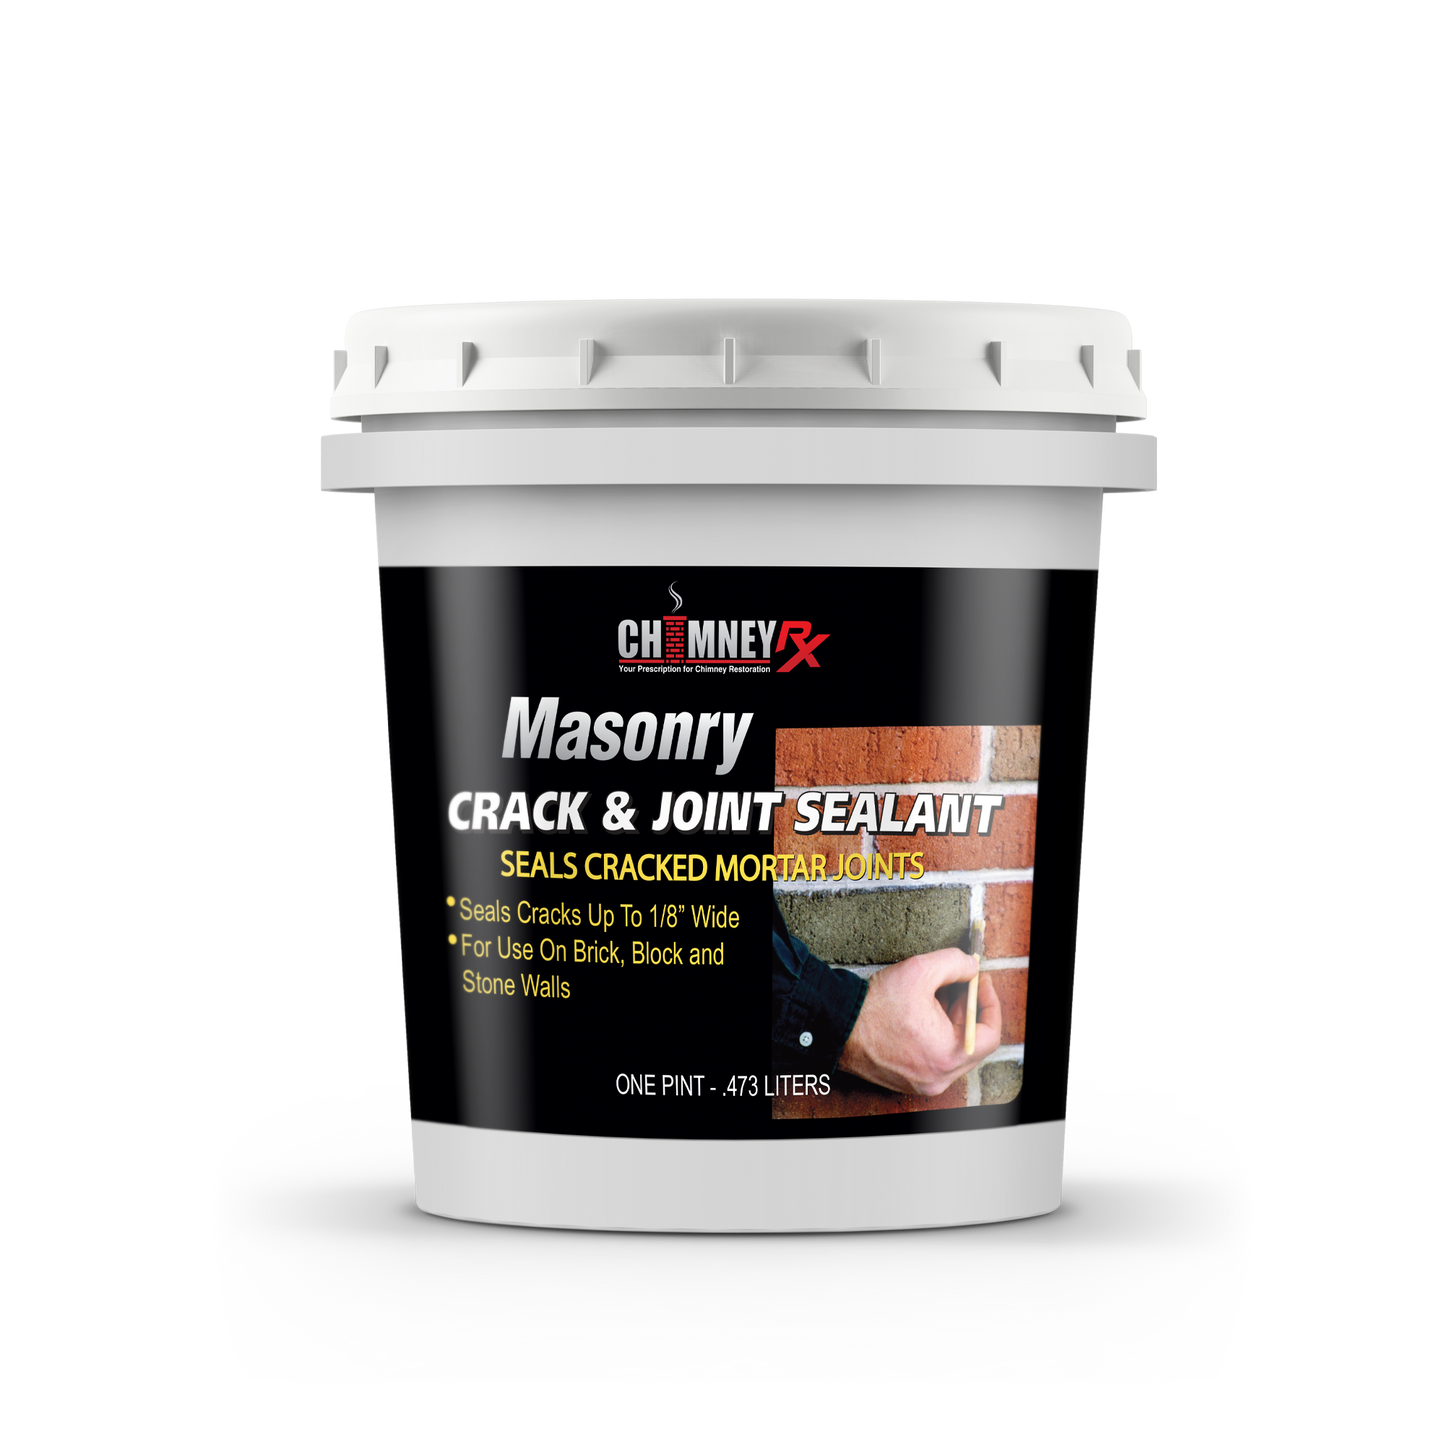 Masonry Crack & Joint Sealant